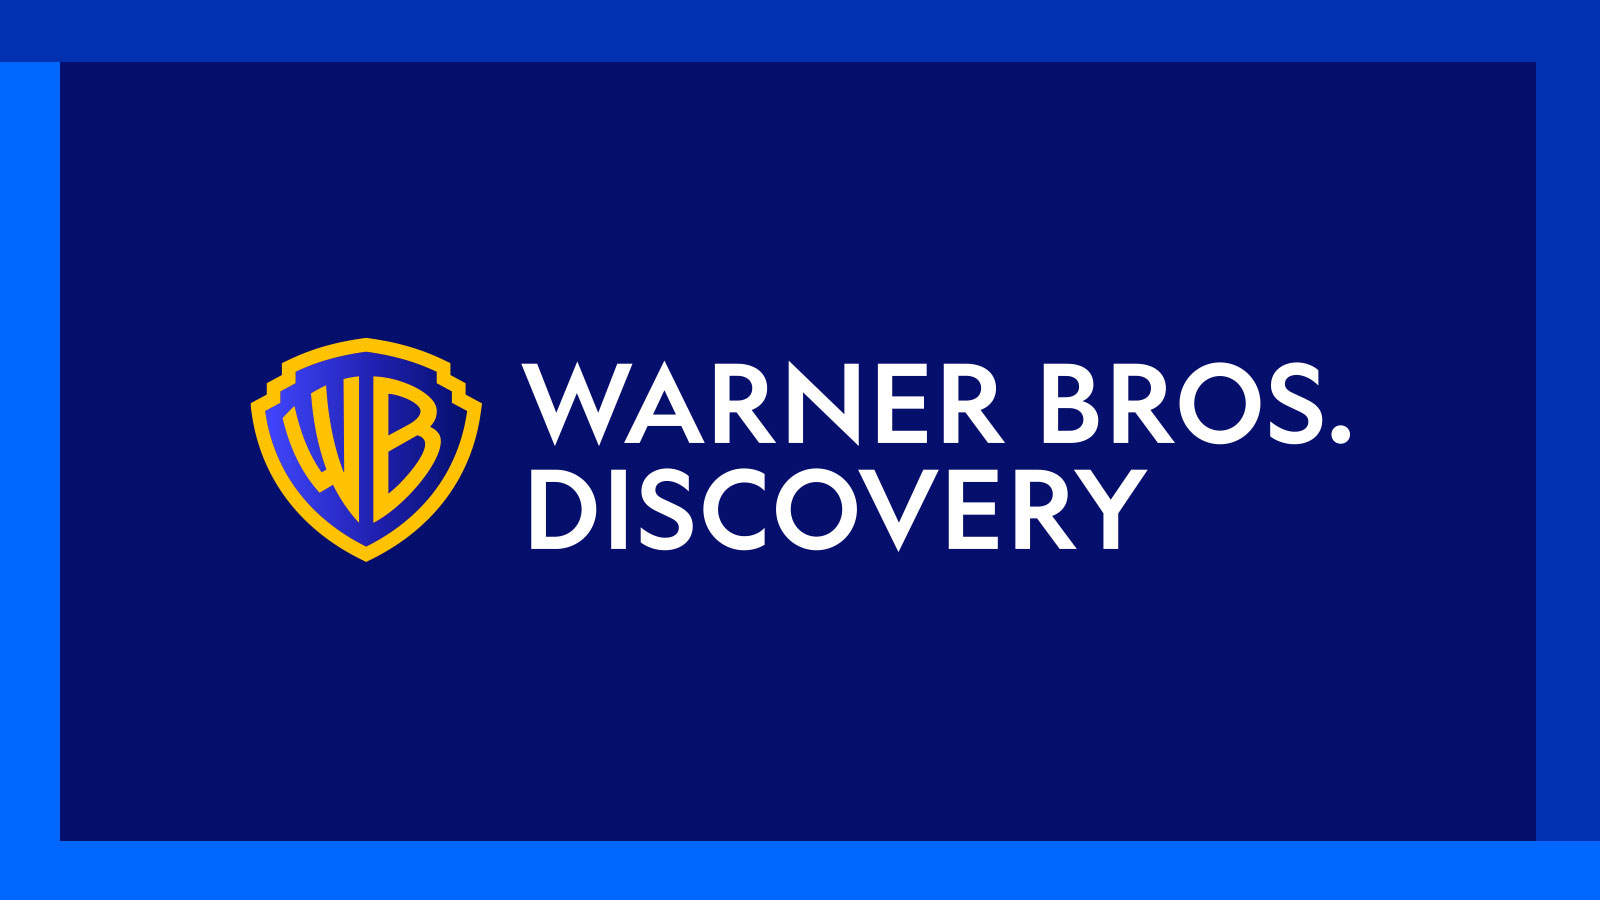 Warner Bros تؤكّد مواصلتها للتركيز على الزيادة من الألعاب الجماعية والخدماتية